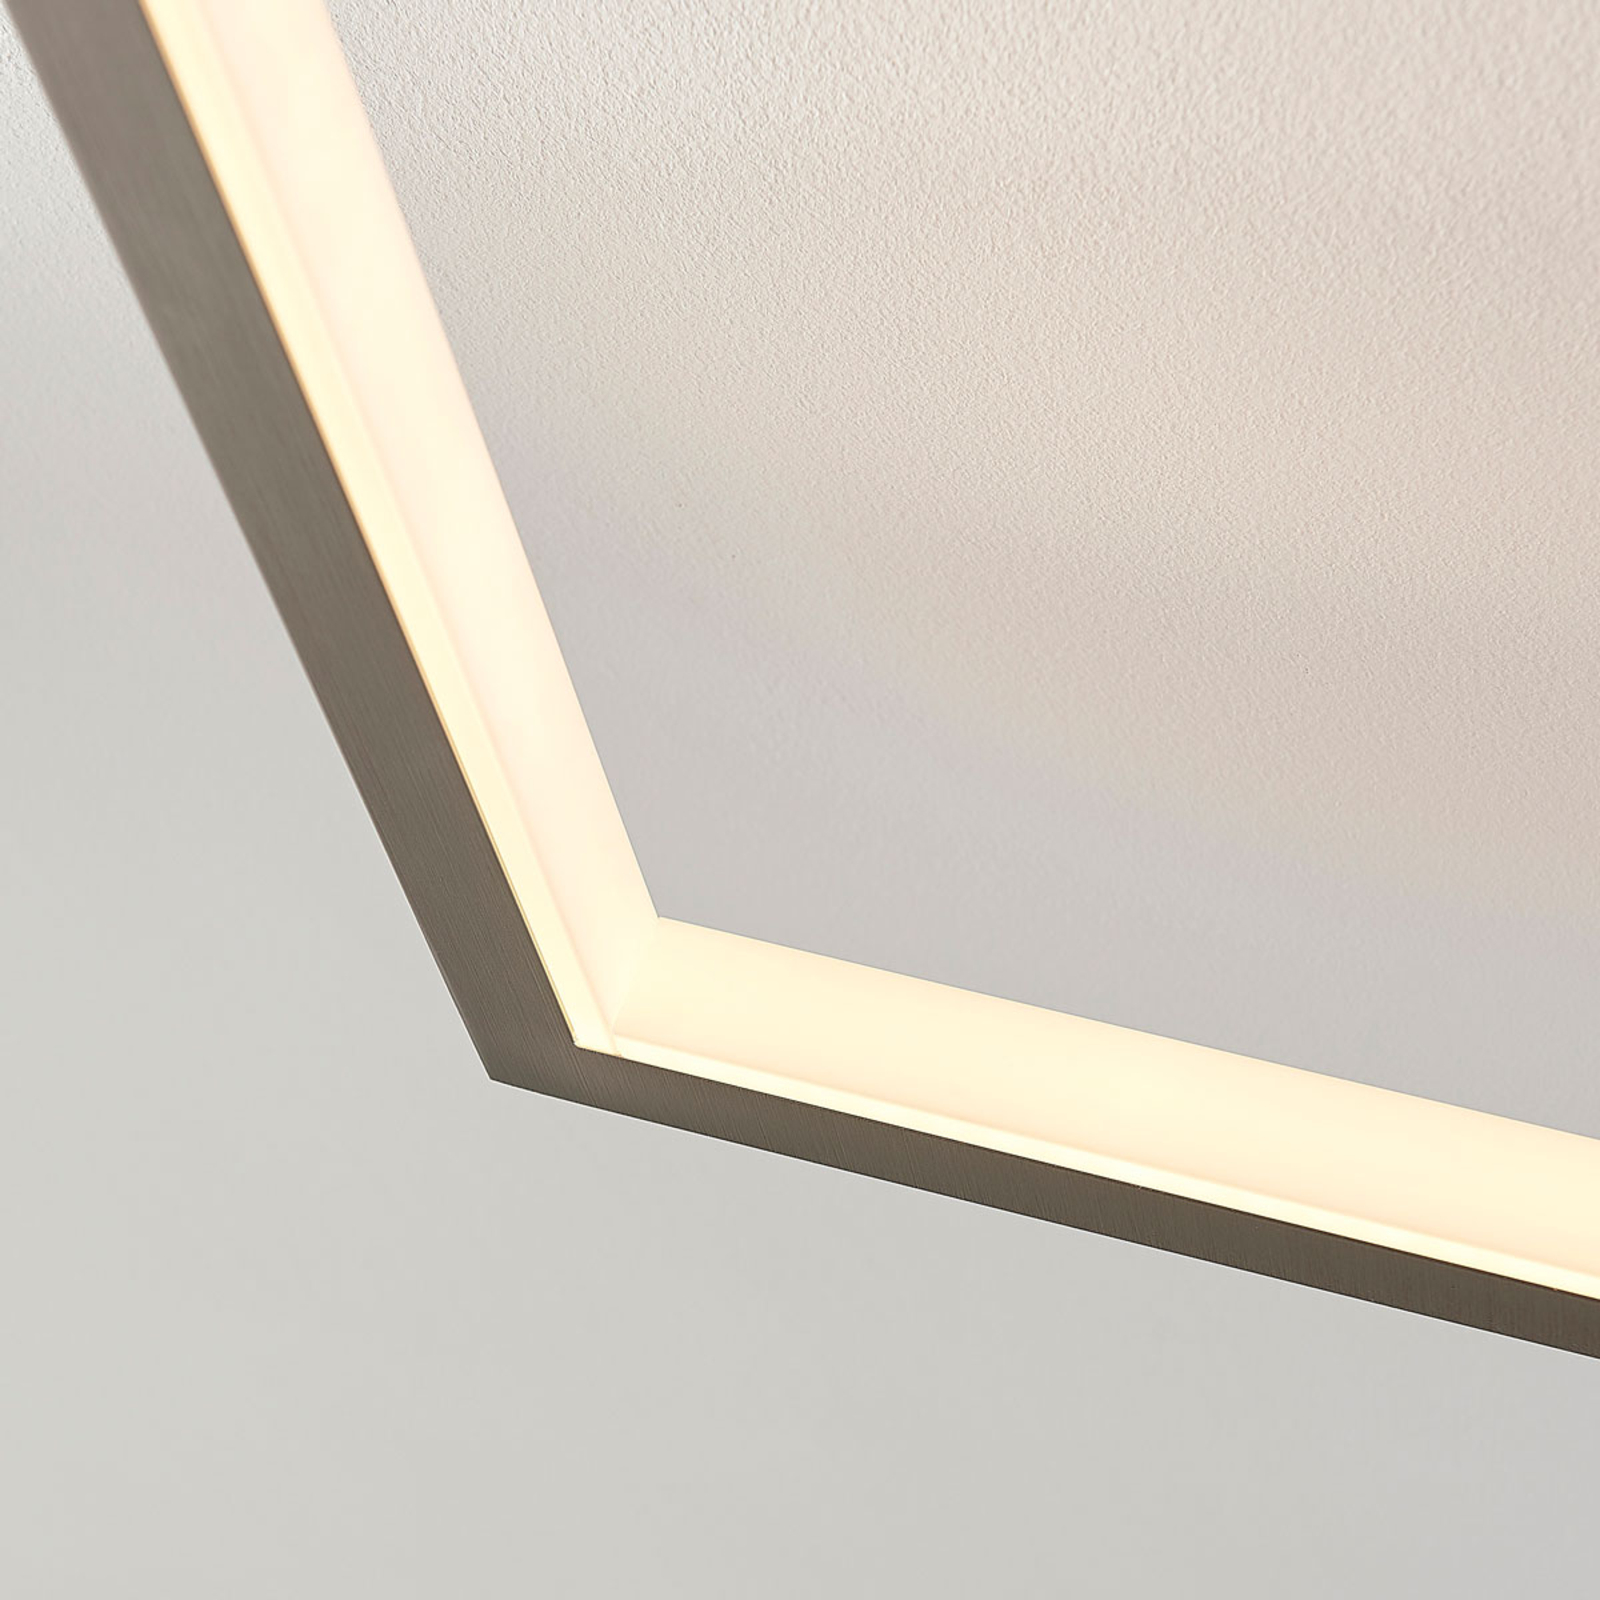 LED plafondlamp Heriba met twee frames, dimbaar